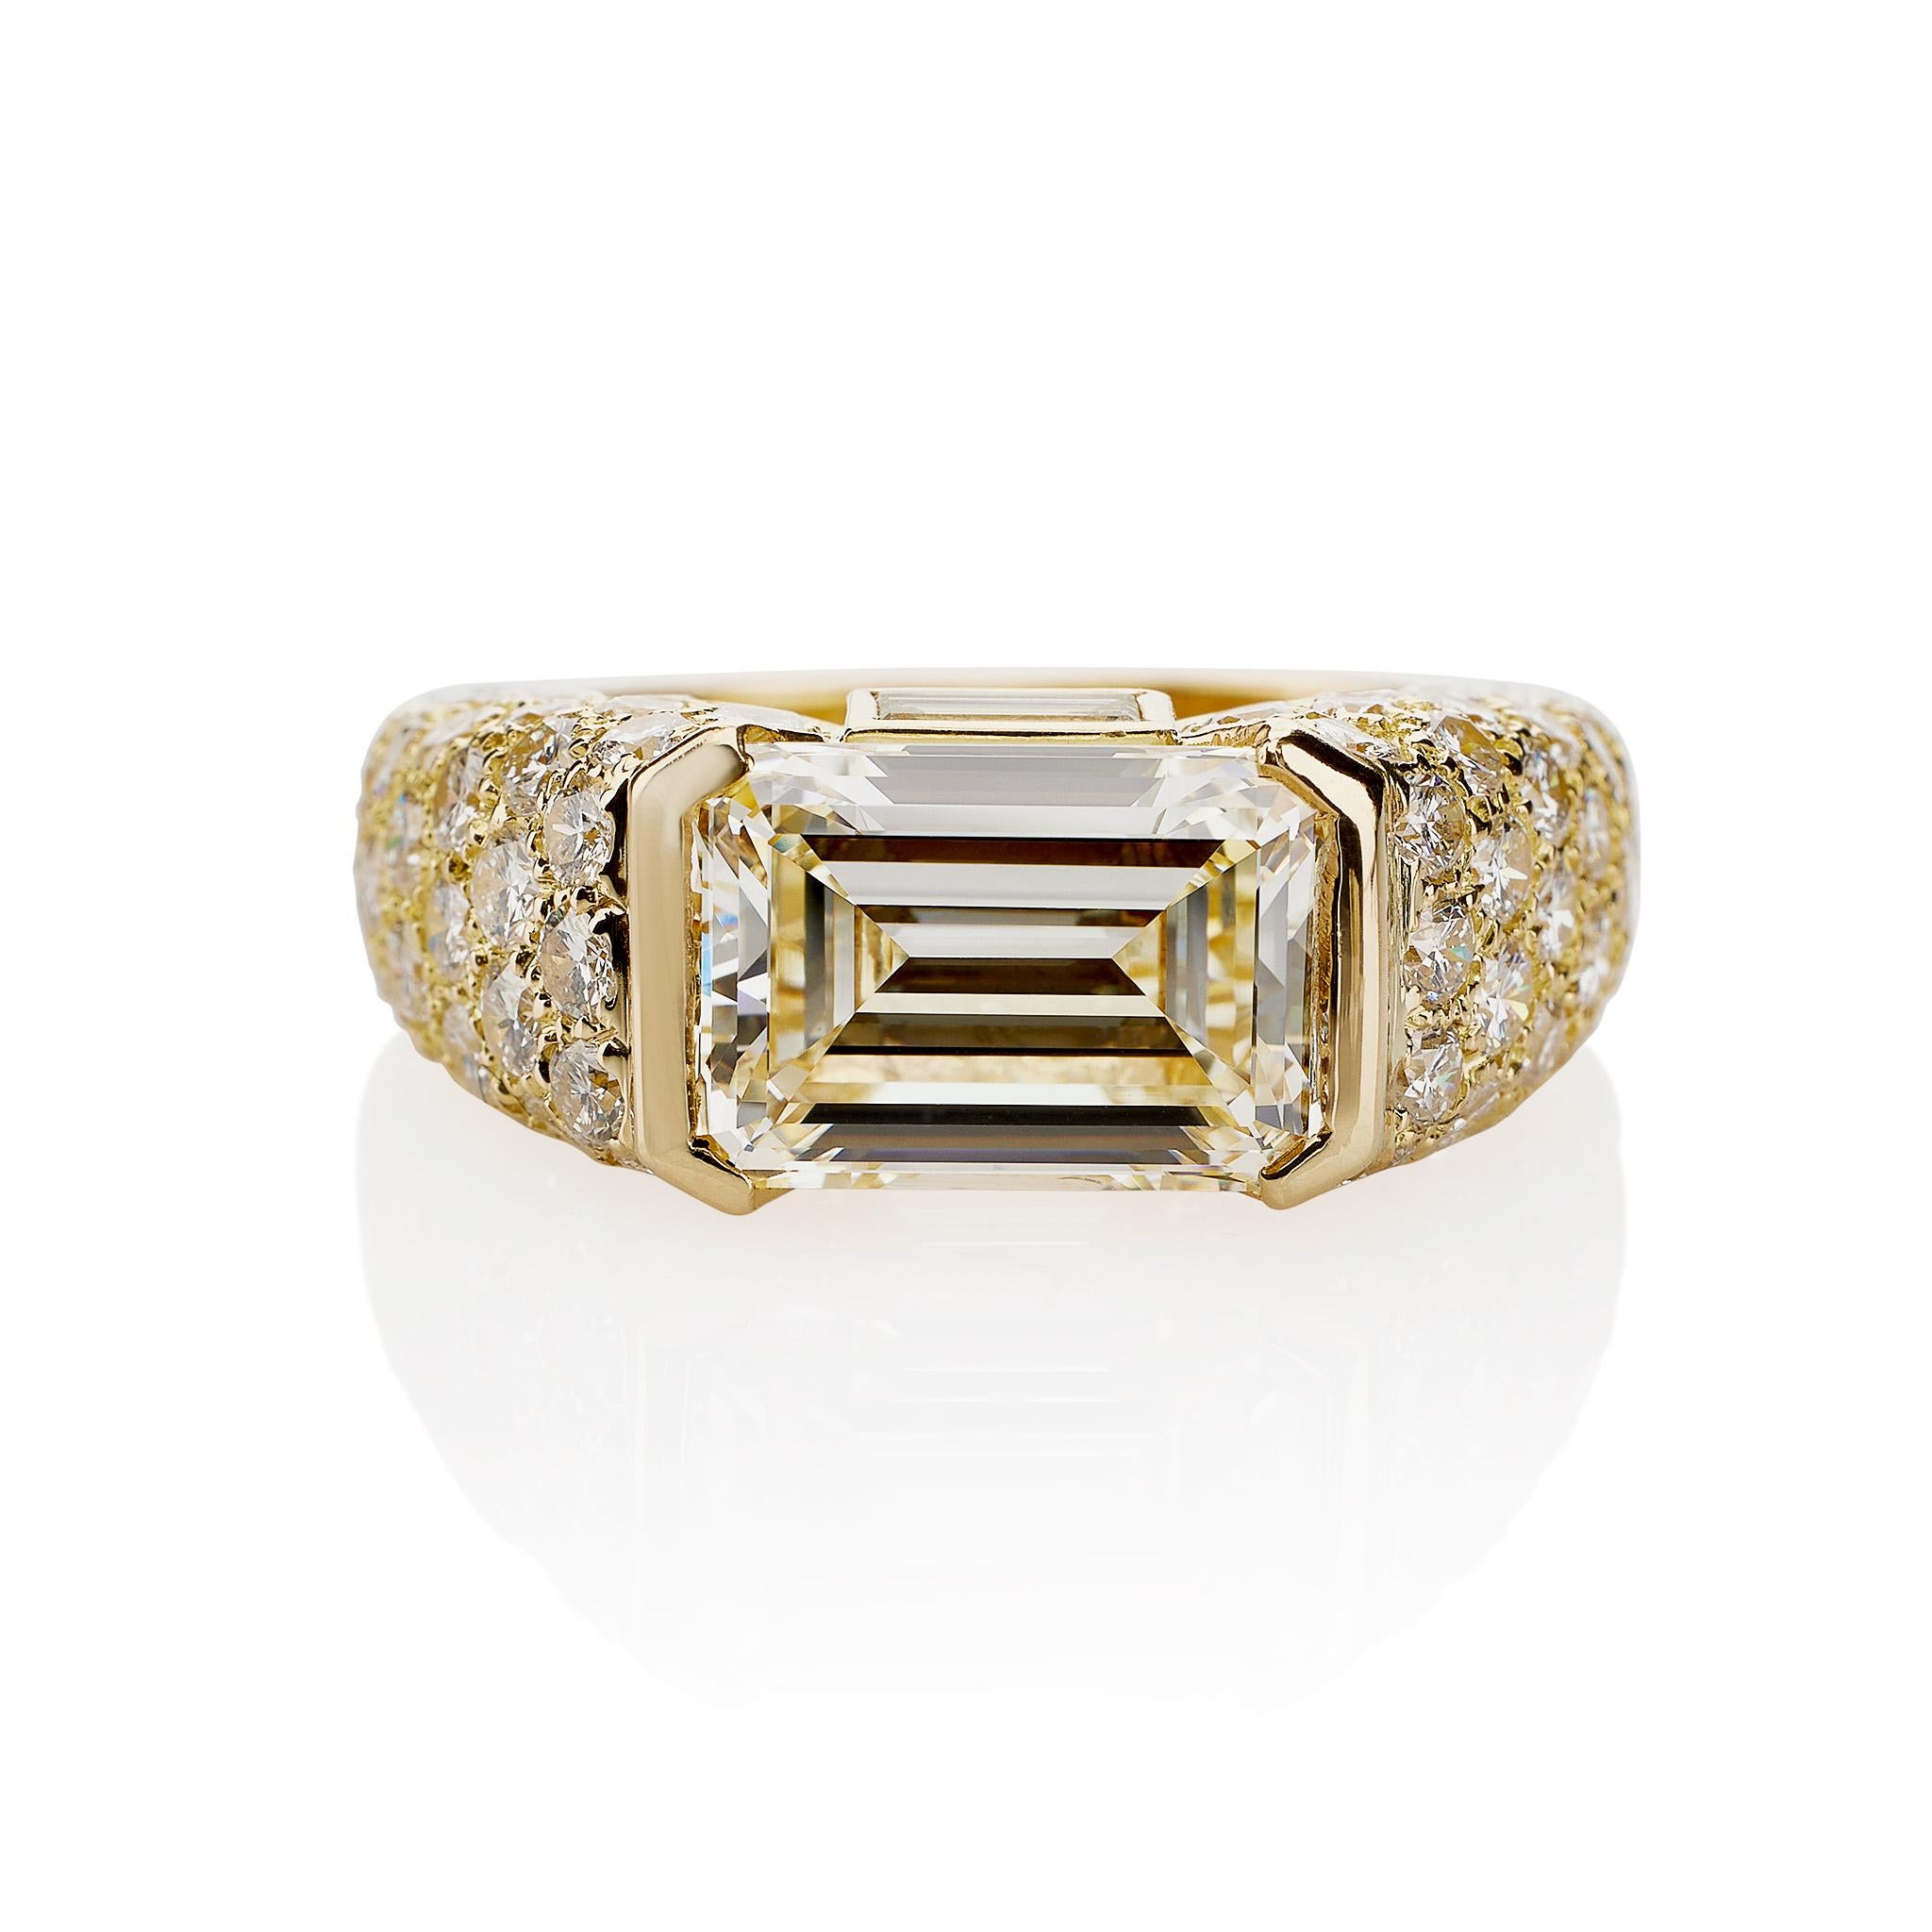 Cette bague Cartier Monture Paris sertie d'un diamant de taille émeraude, rapport GIA couleur L, pureté VVS2, est montée en or 18 carats. Le diamant de 4,93 carats est monté horizontalement, ses épaules étant pavées de mélèzes de diamants, et